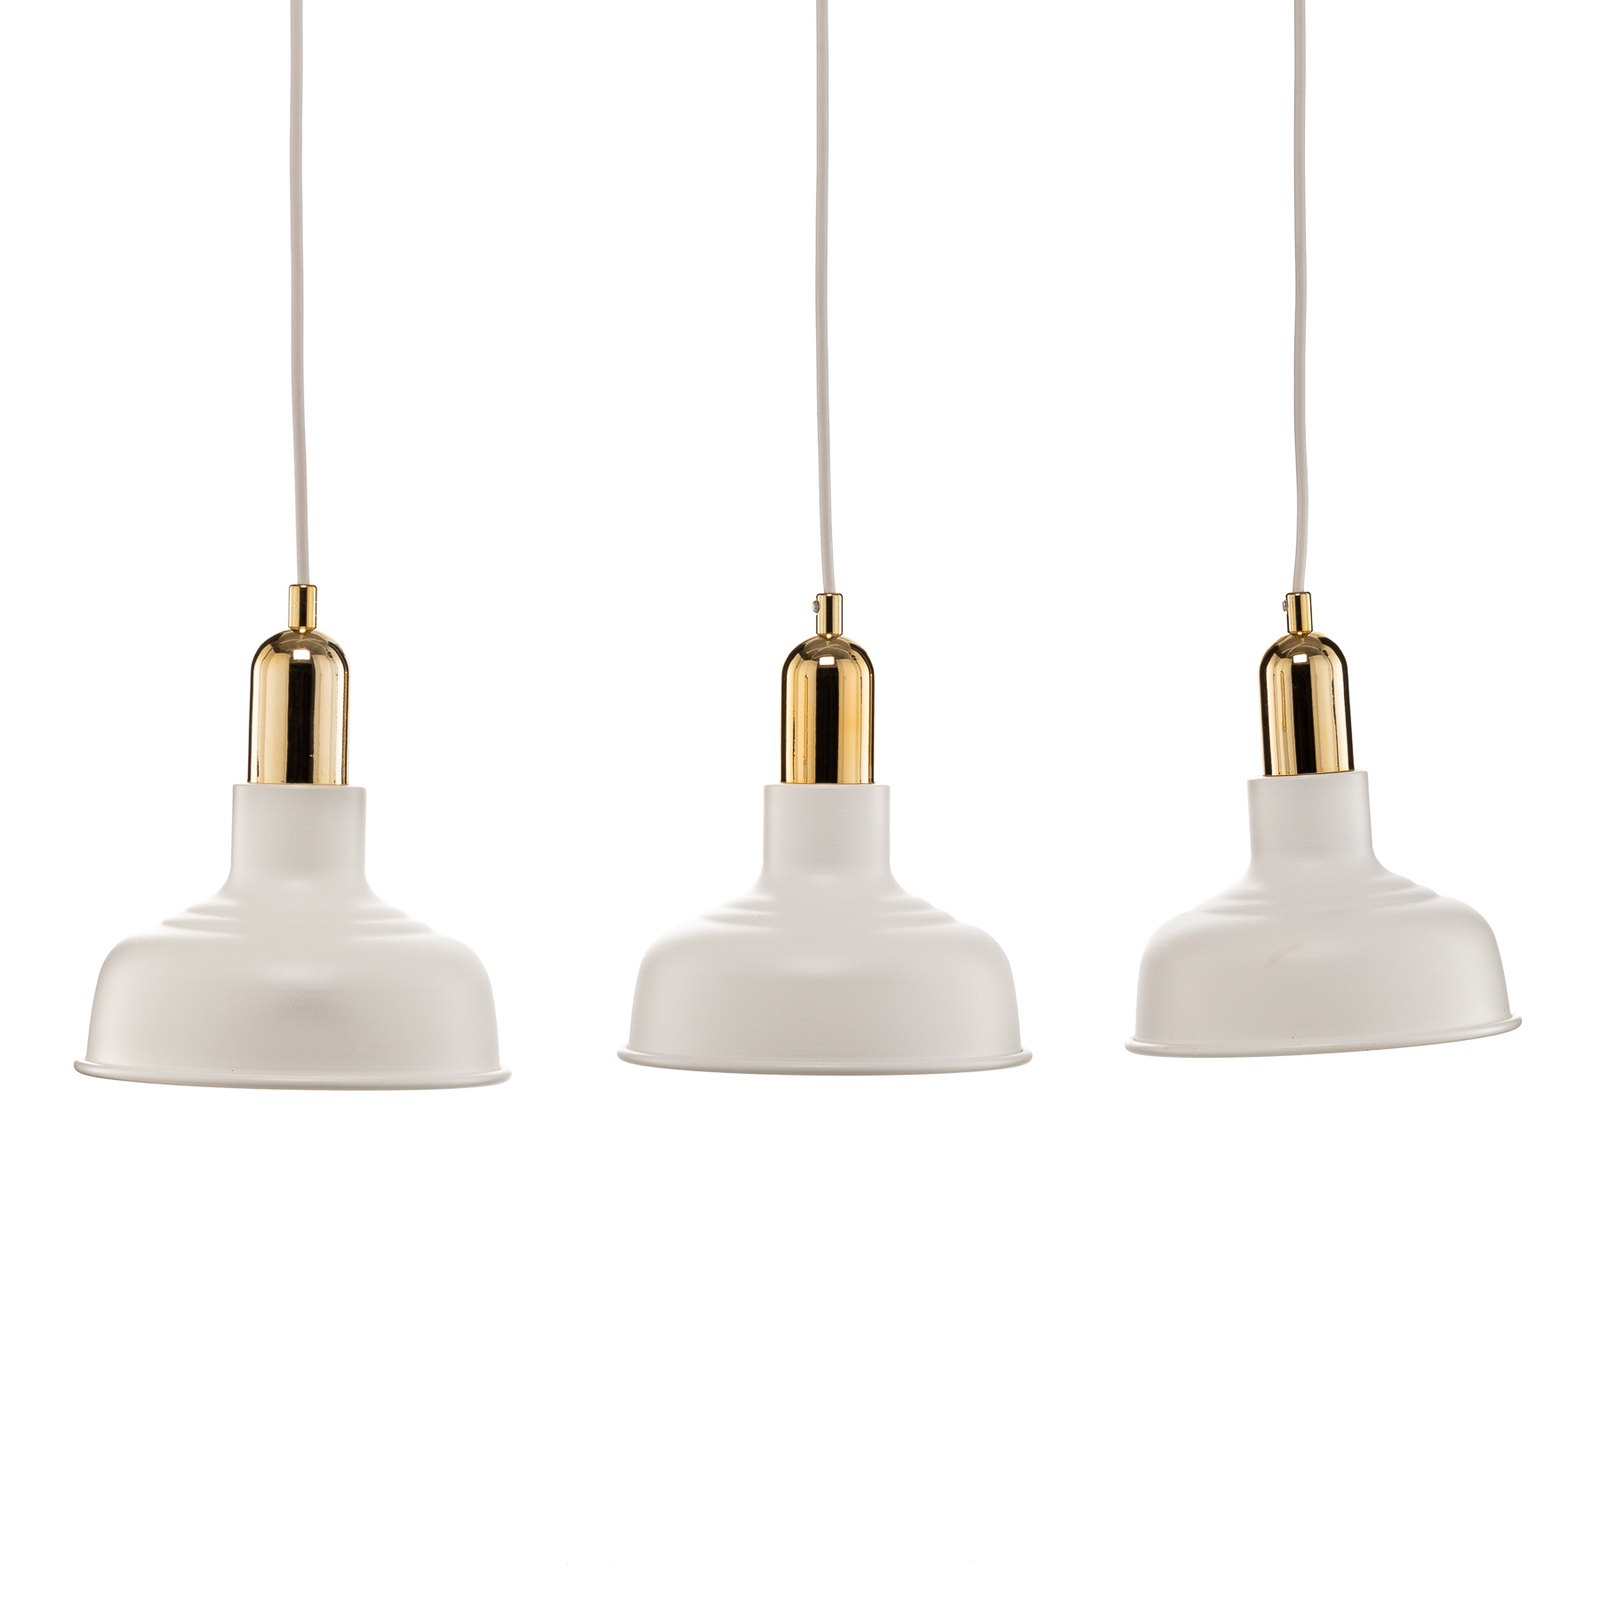 Gubo pendant light, 3-bulb, white